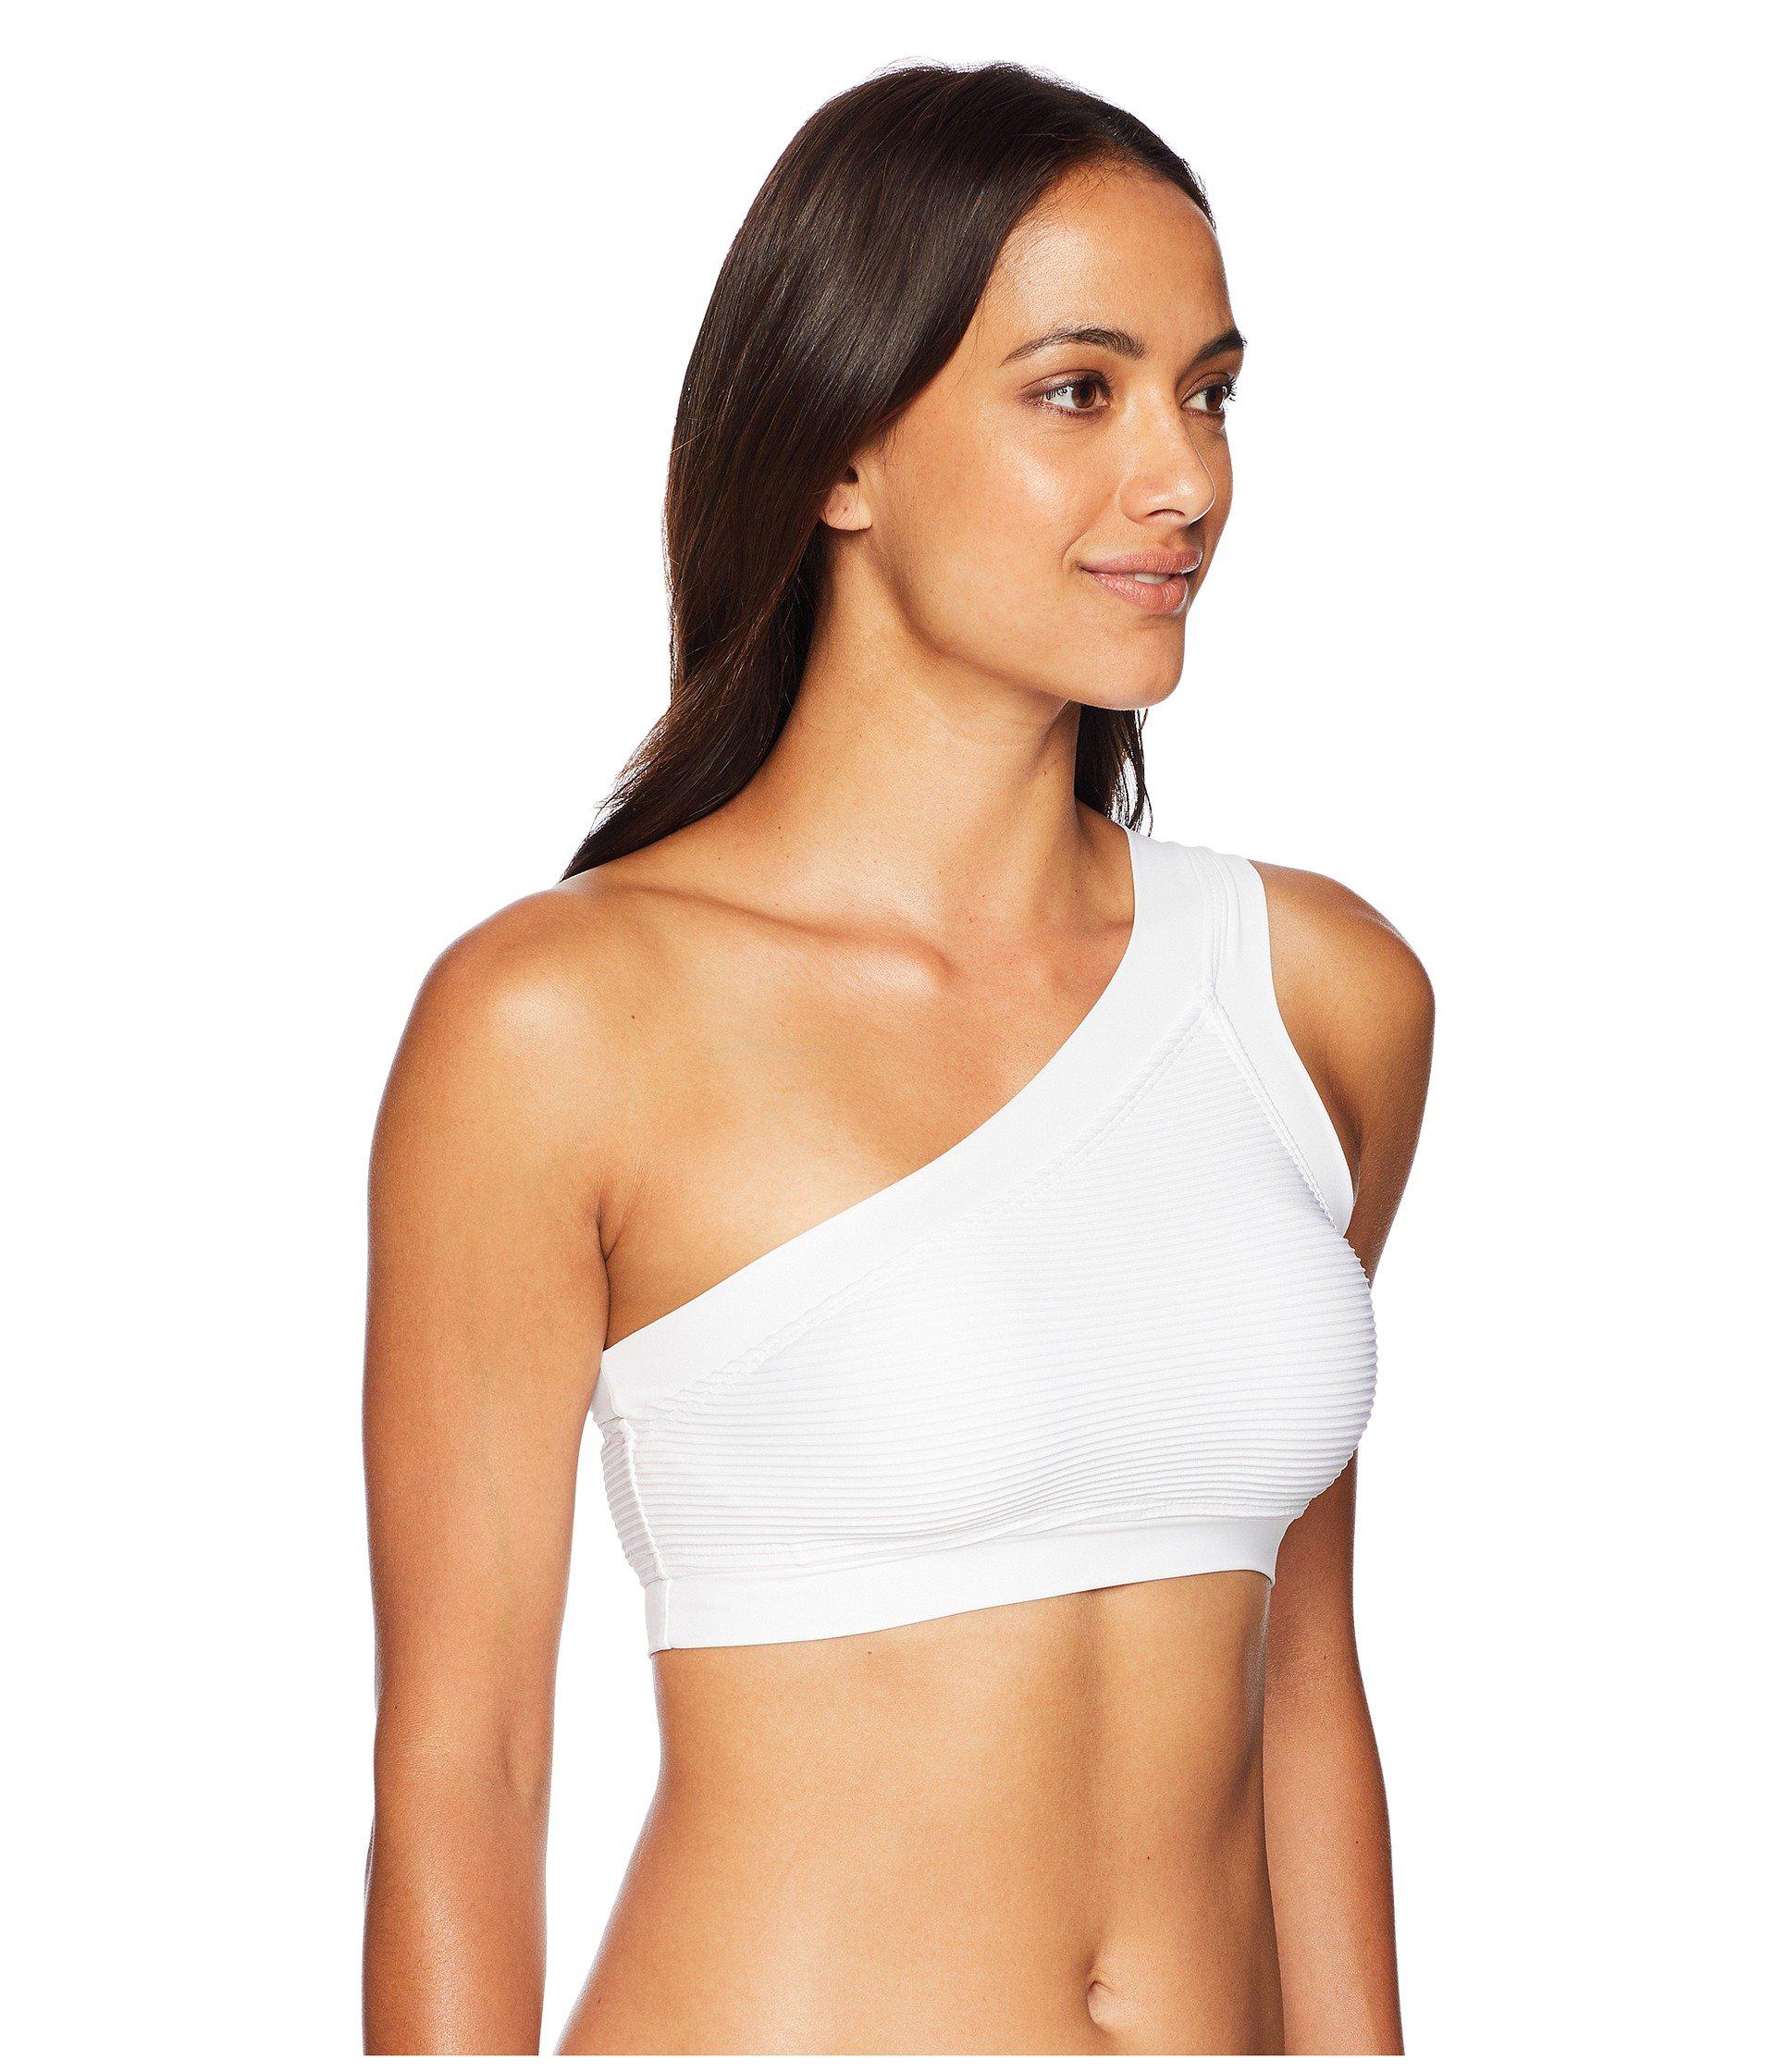 علق مشاة بقرة white sports bra one shoulder bra white asymmetrical  athleisure - immersivespaceprogramme.com